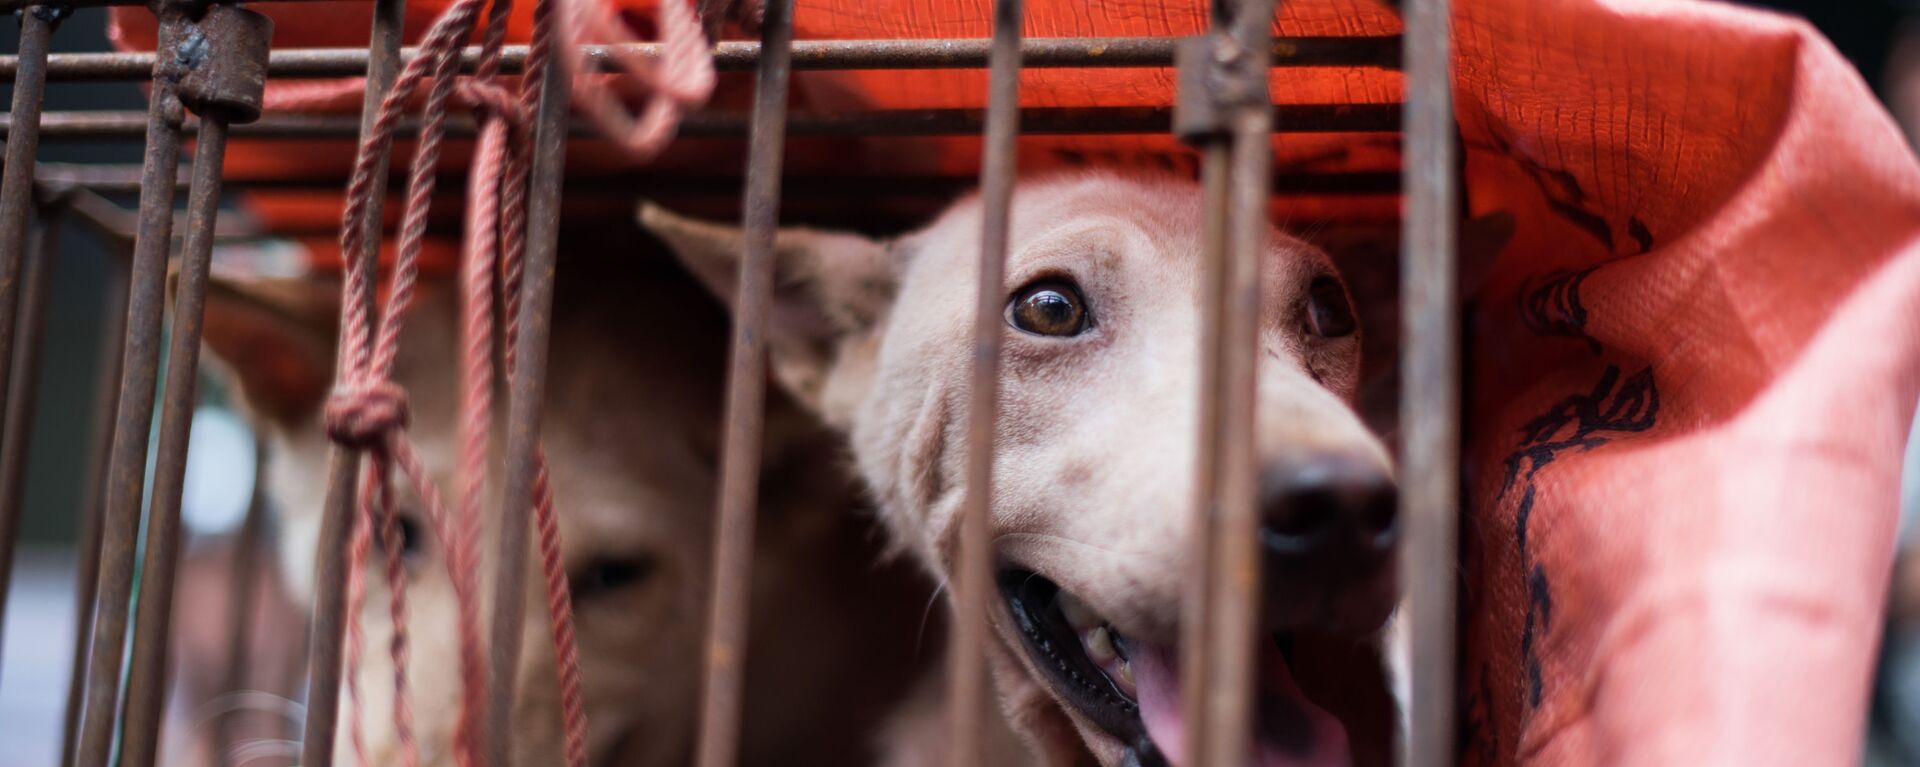 Собака в клетке на одном из рынков Китая - Sputnik Ўзбекистон, 1920, 30.10.2020